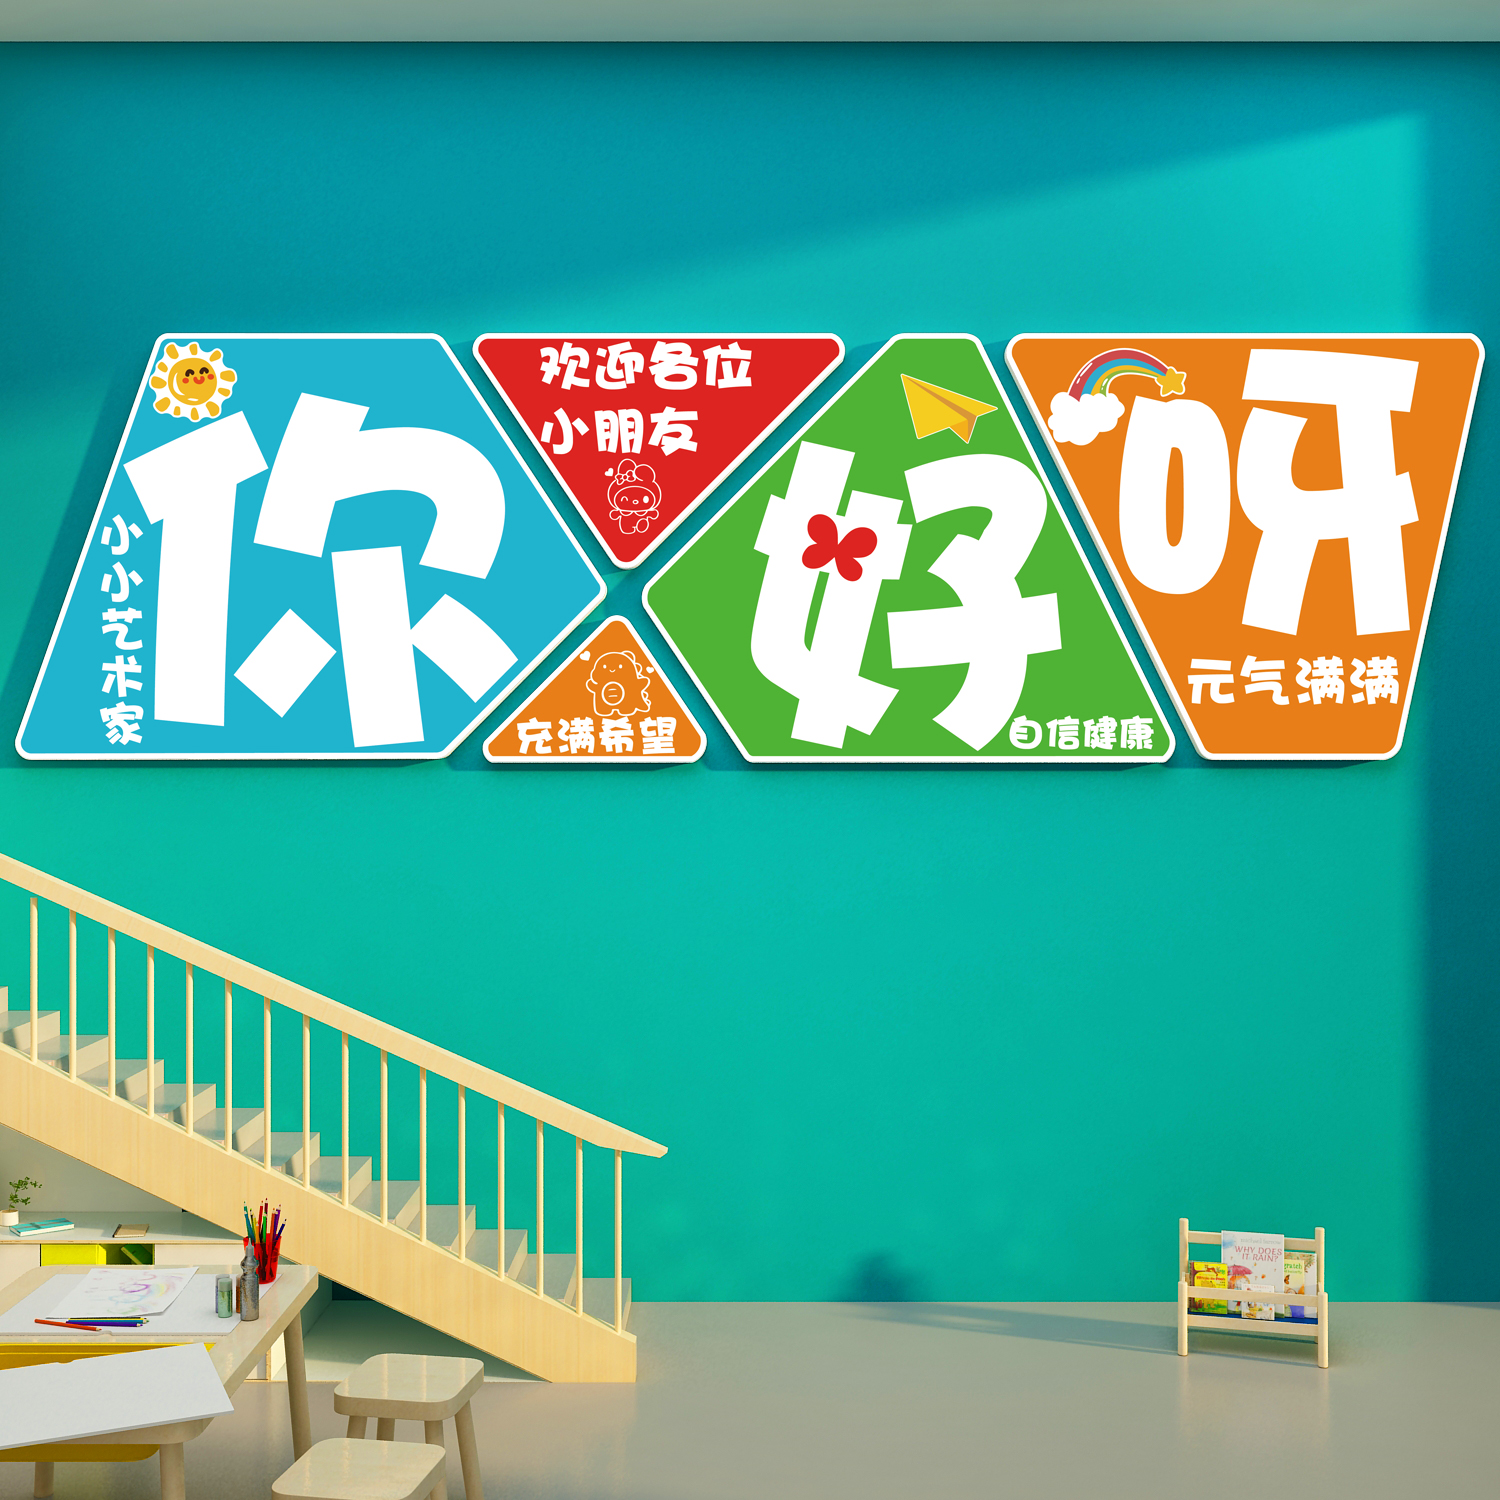 幼儿园环创主题成品文化设计楼梯墙面装饰互动贴纸走廊托管班形象